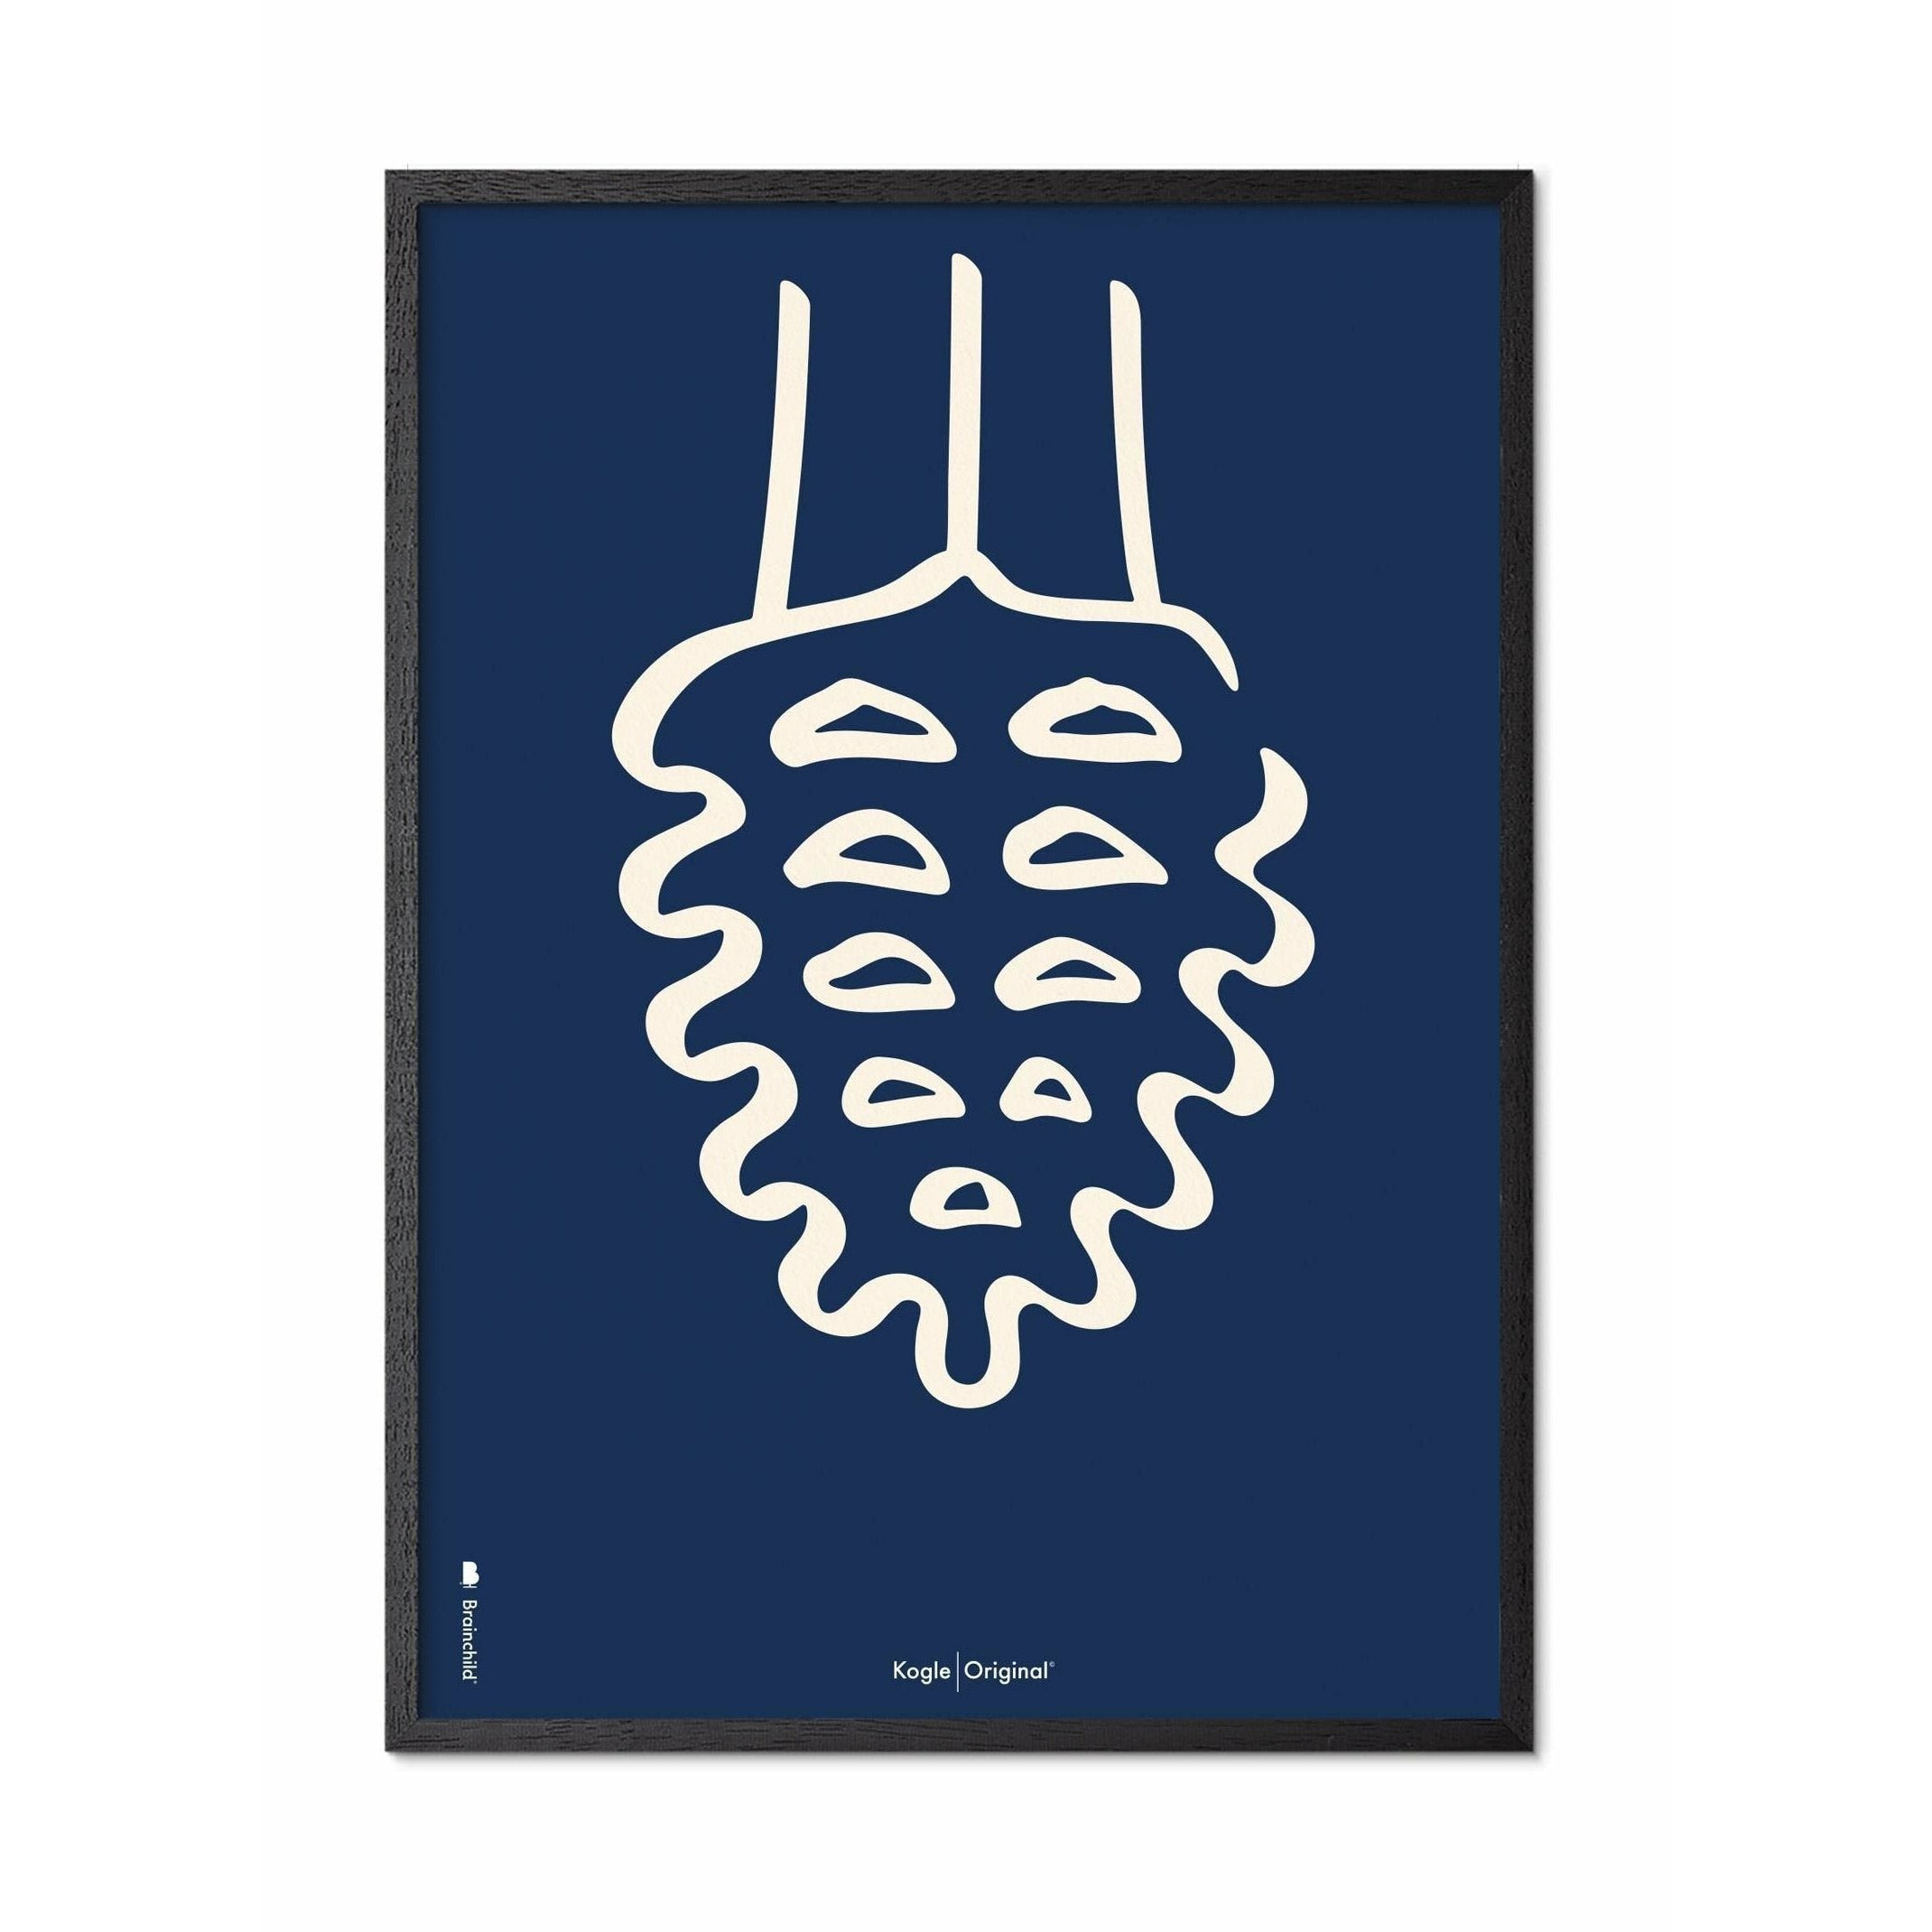 Brainchild Tallkotte Line Affisch, ram i svart lackerat trä 50x70 cm, blå bakgrund